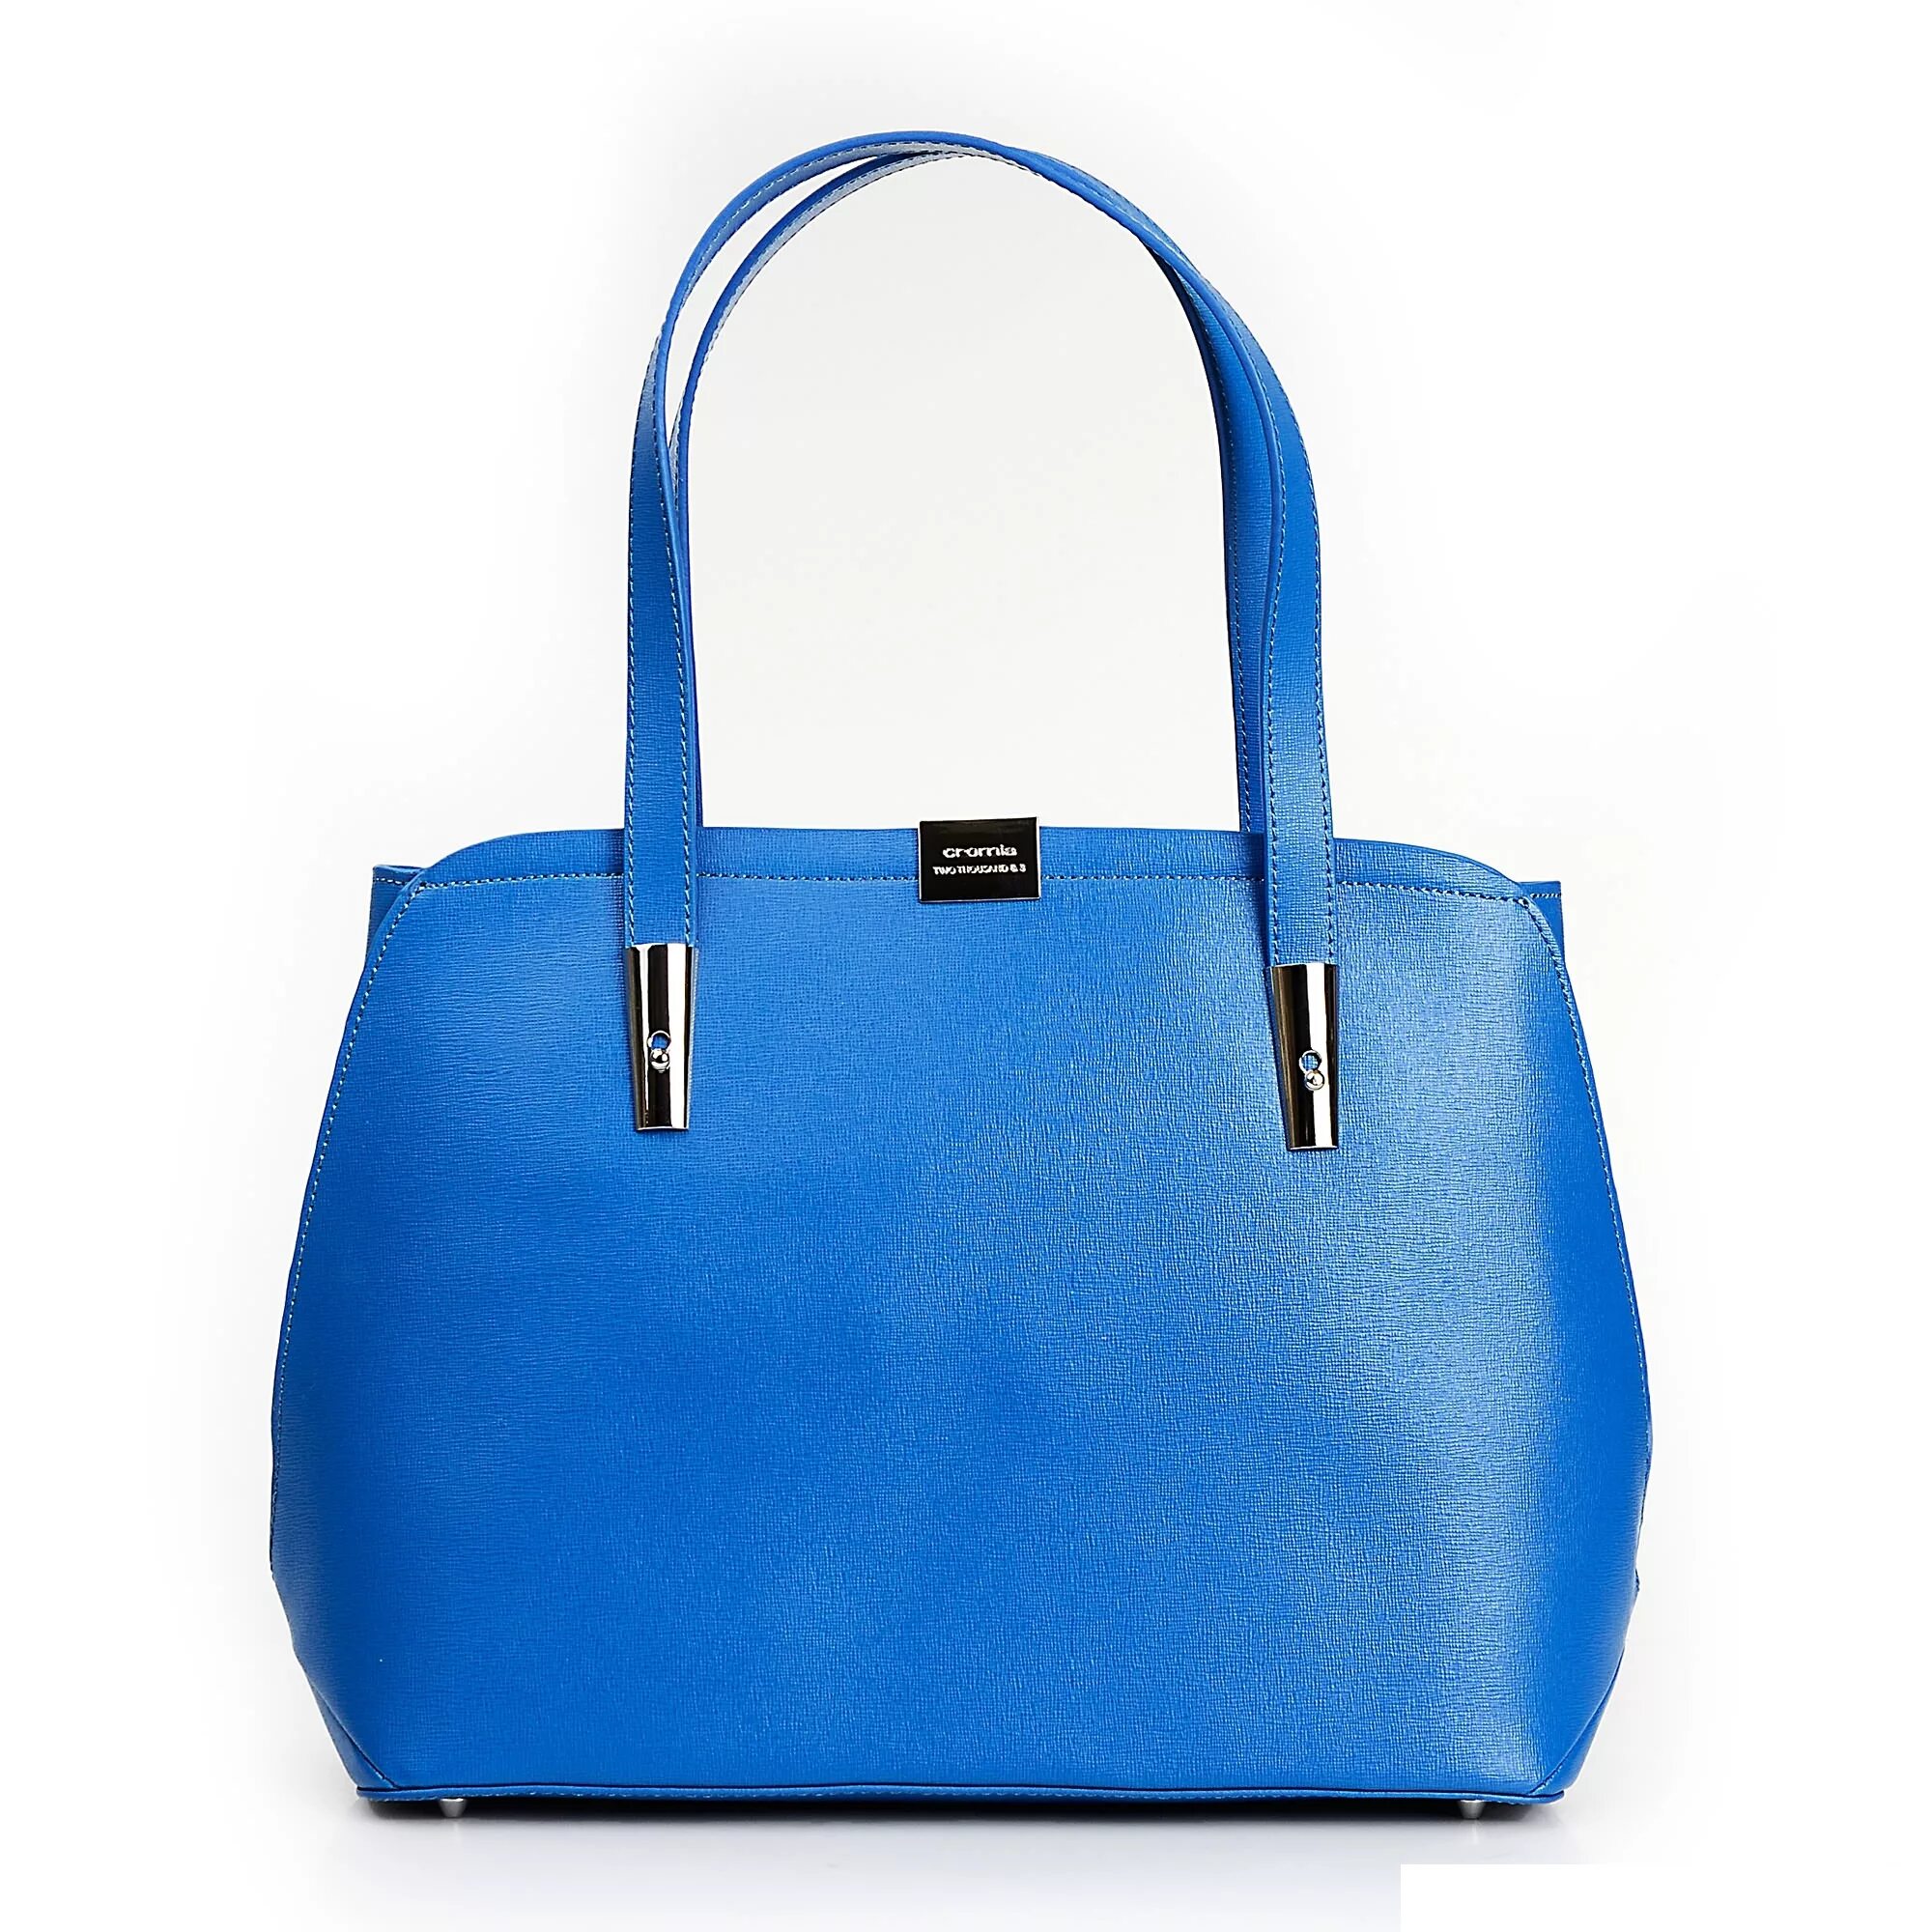 Купить голубую сумку женскую. Сумка Cromia синяя. Сумка женская 7709b808 Blue. Синяя сумка женская валберис. Сумки кромия голубого цвета женские.